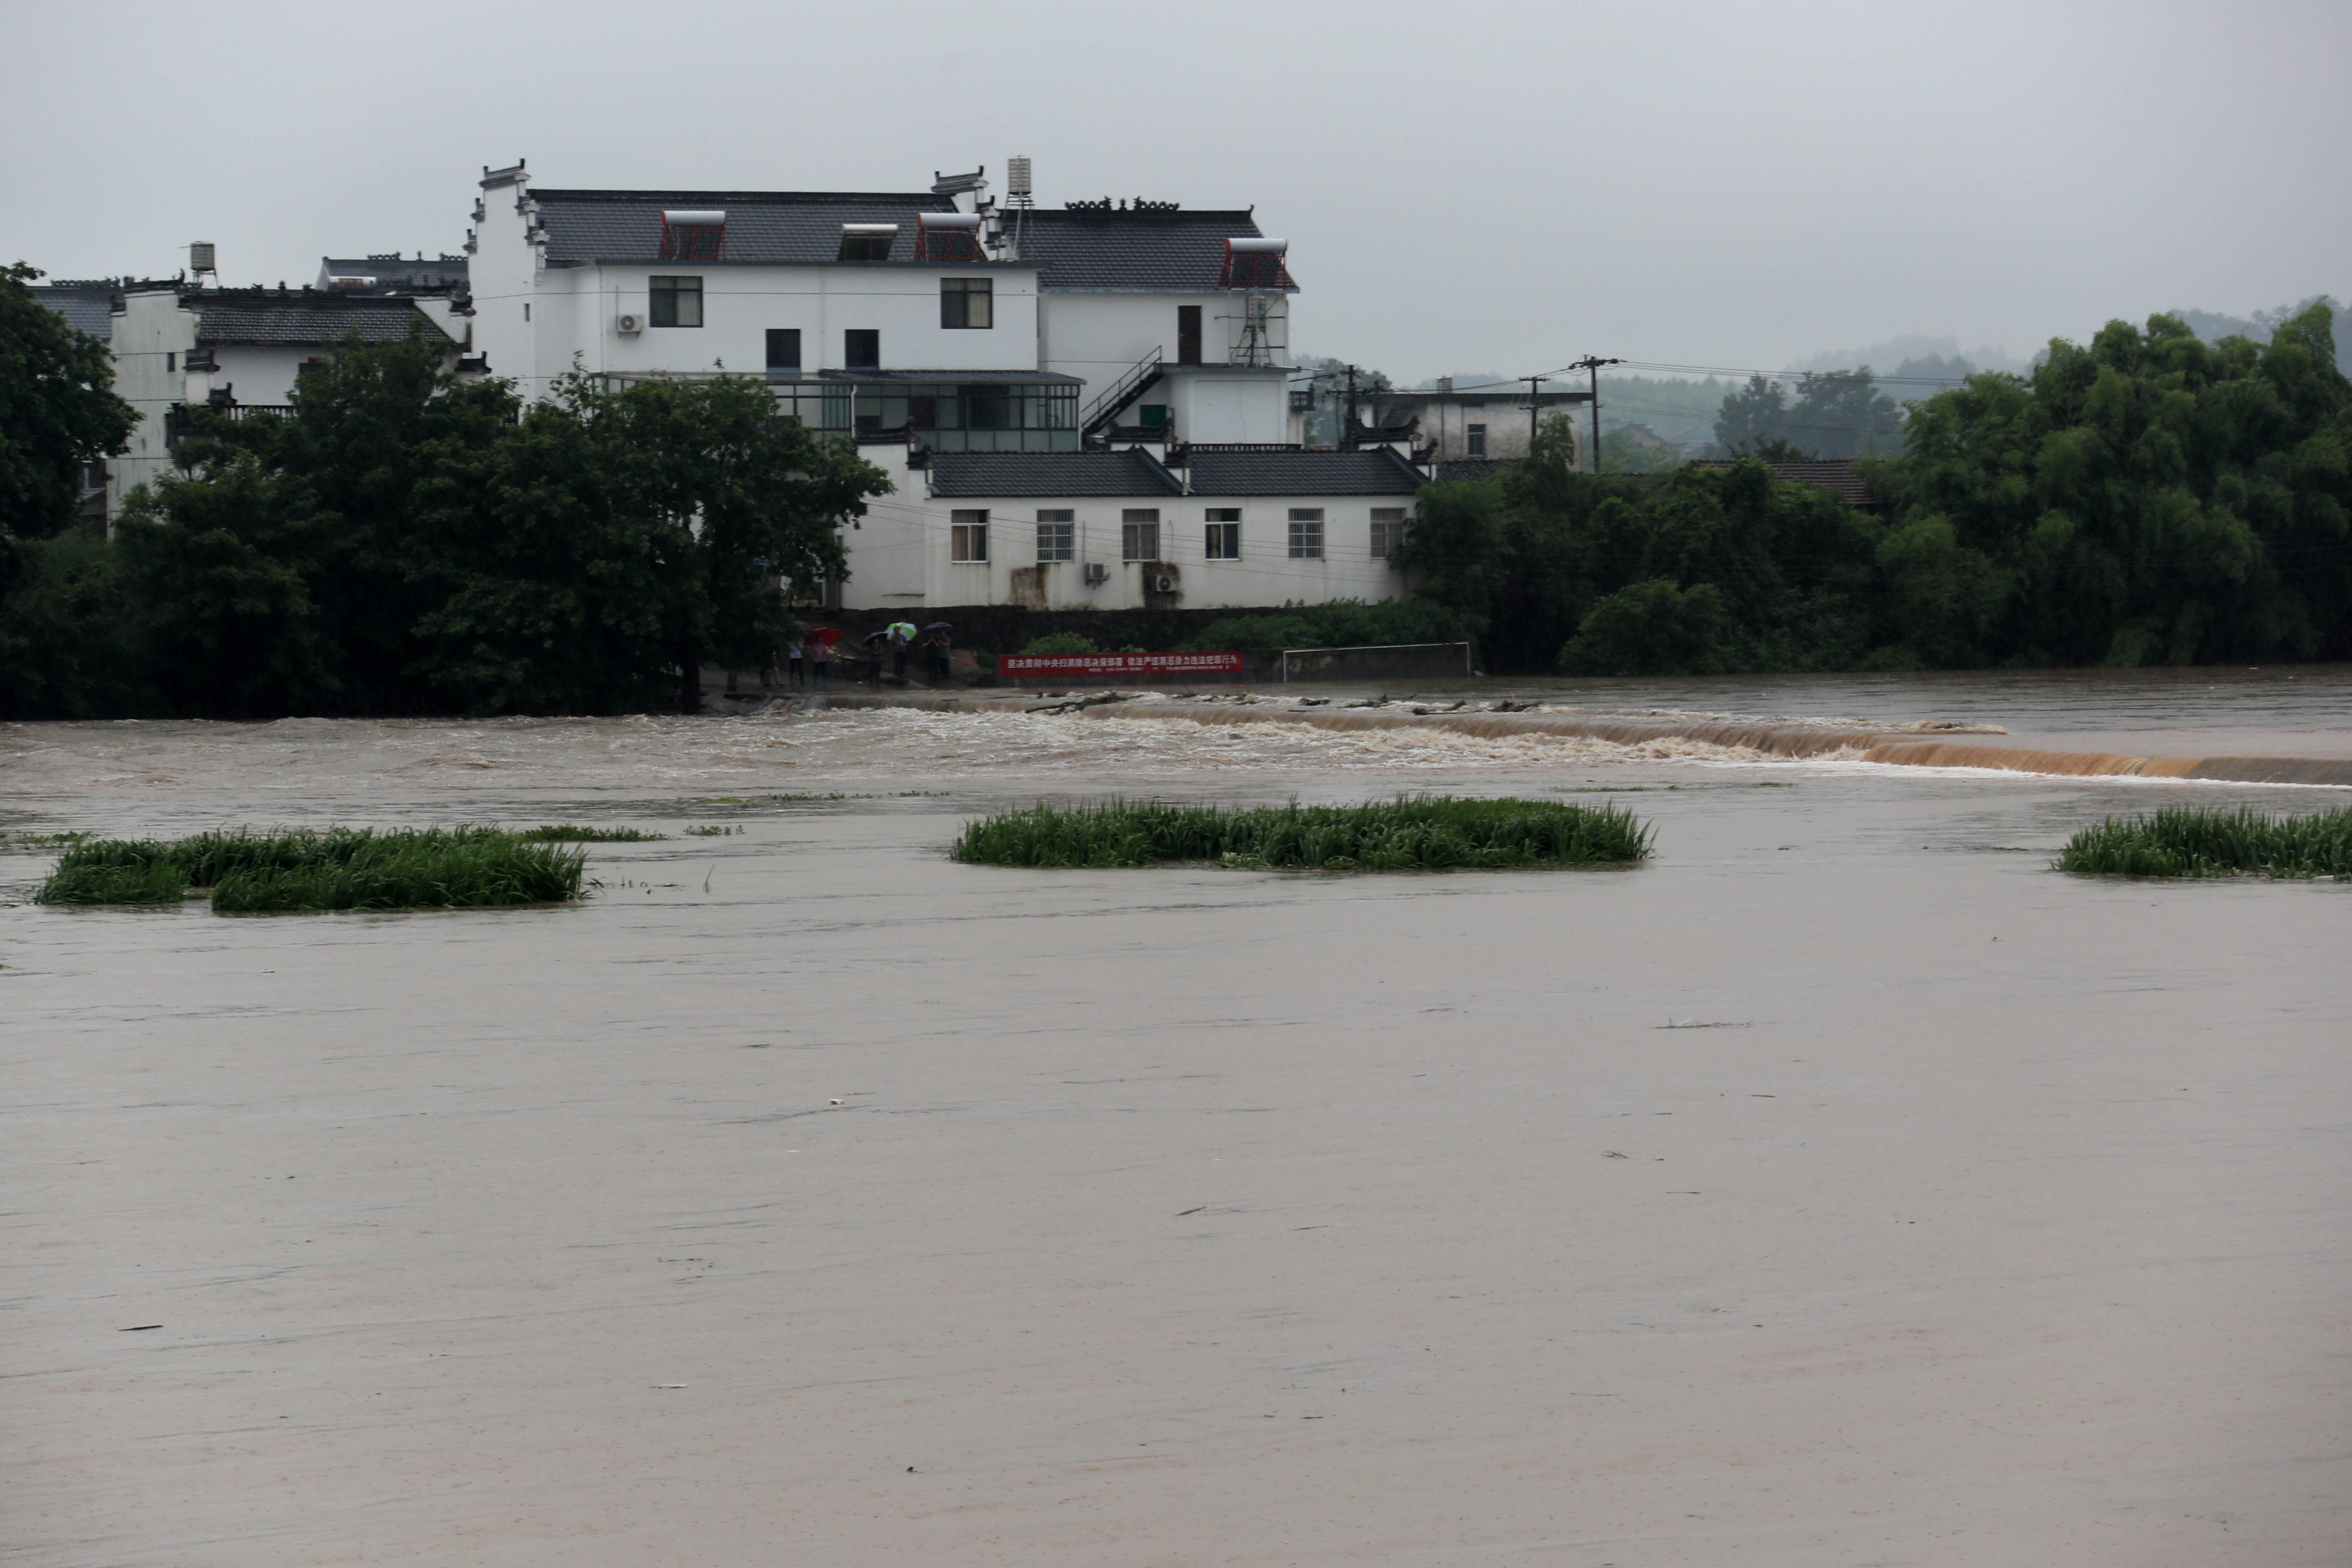 四川射洪暴雨 城区部分地区内涝 - 四川 - 华西都市网新闻频道